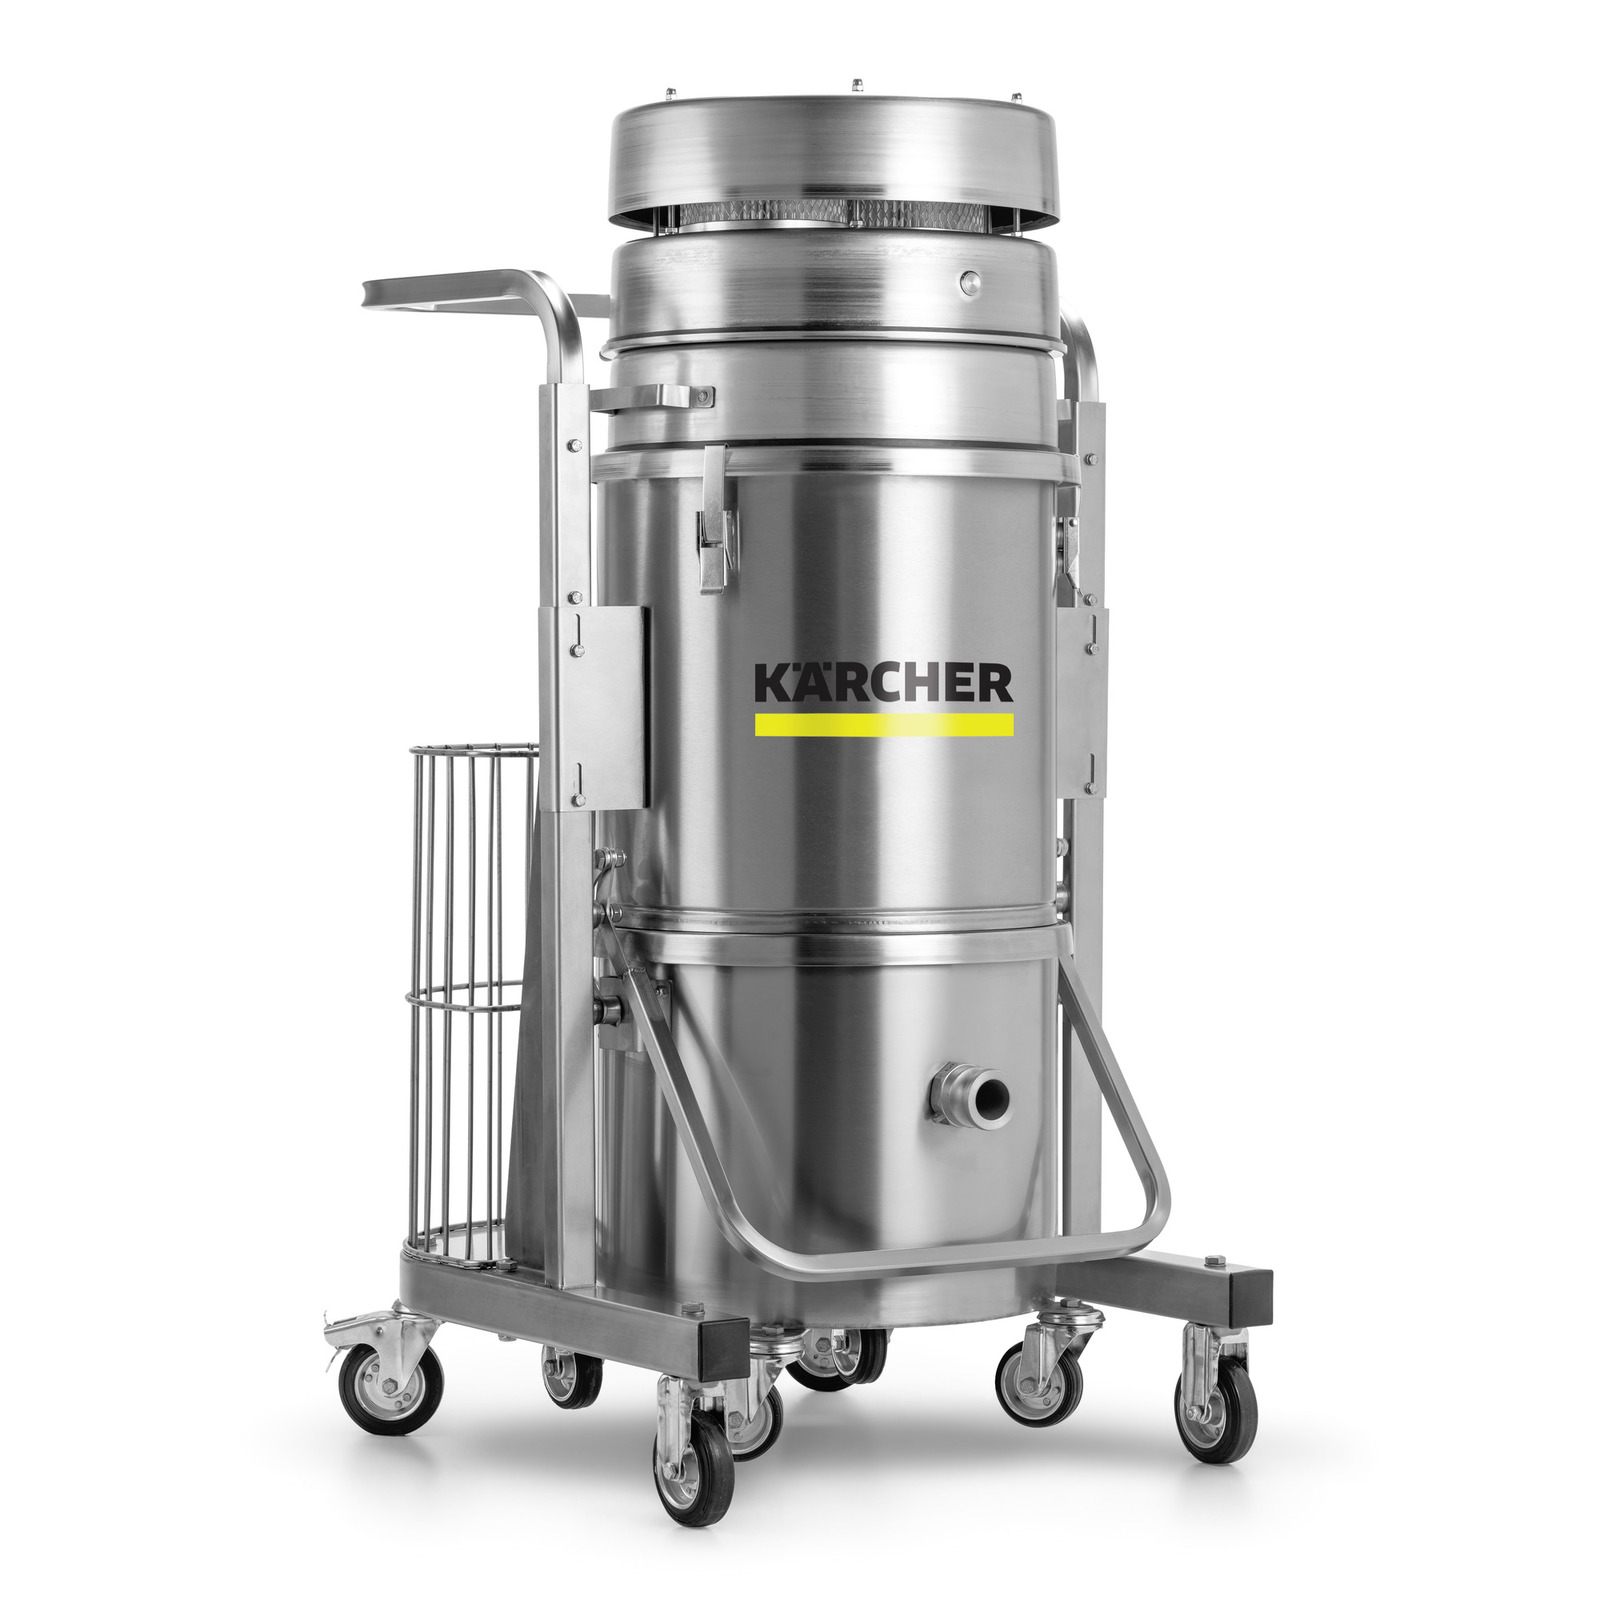 Vacuum dust cleaner пылесос. IVM 60/24 промышленный пылесос.